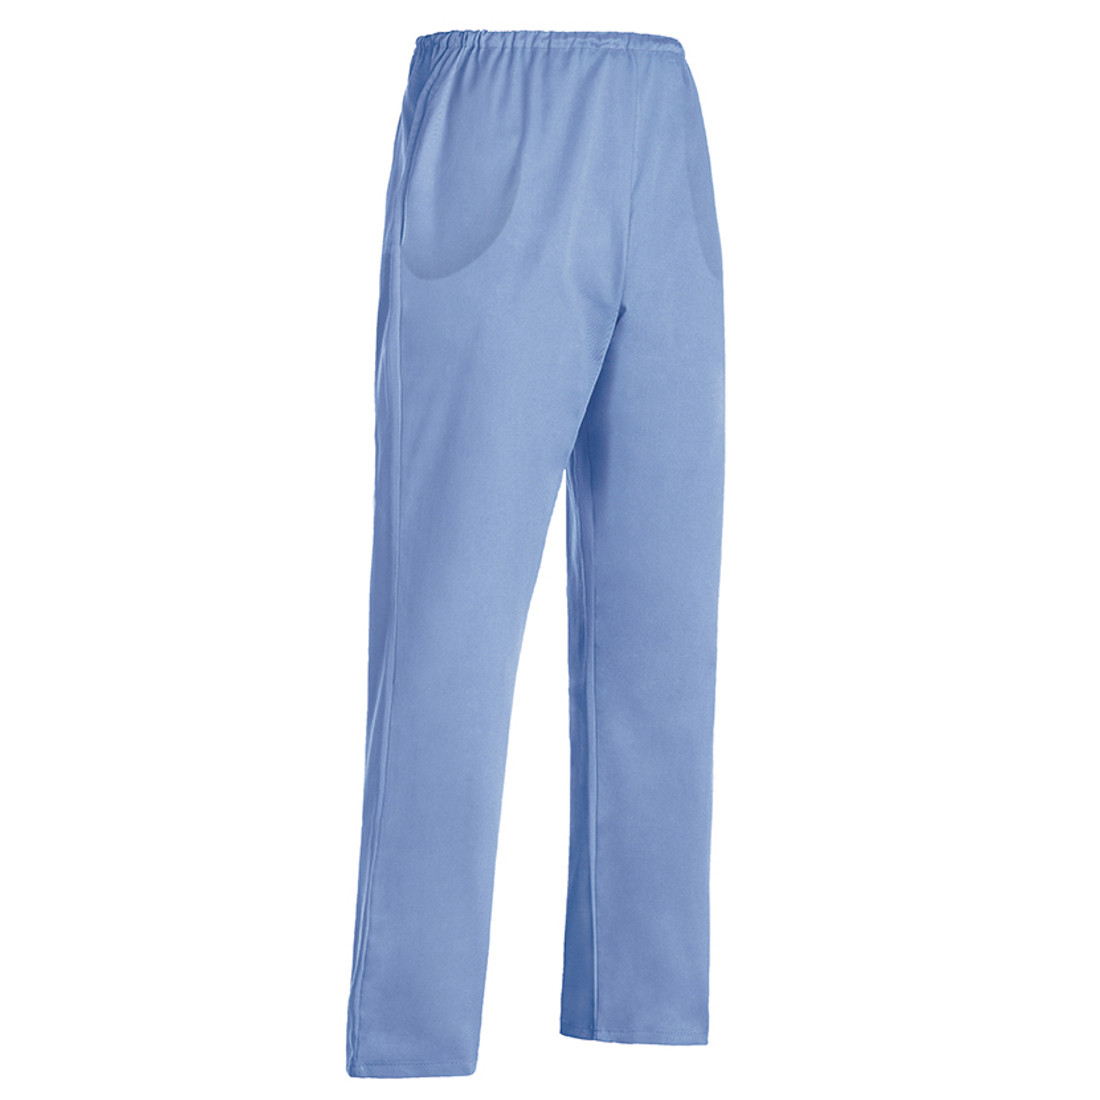 Nurse Trousers - Safetywear